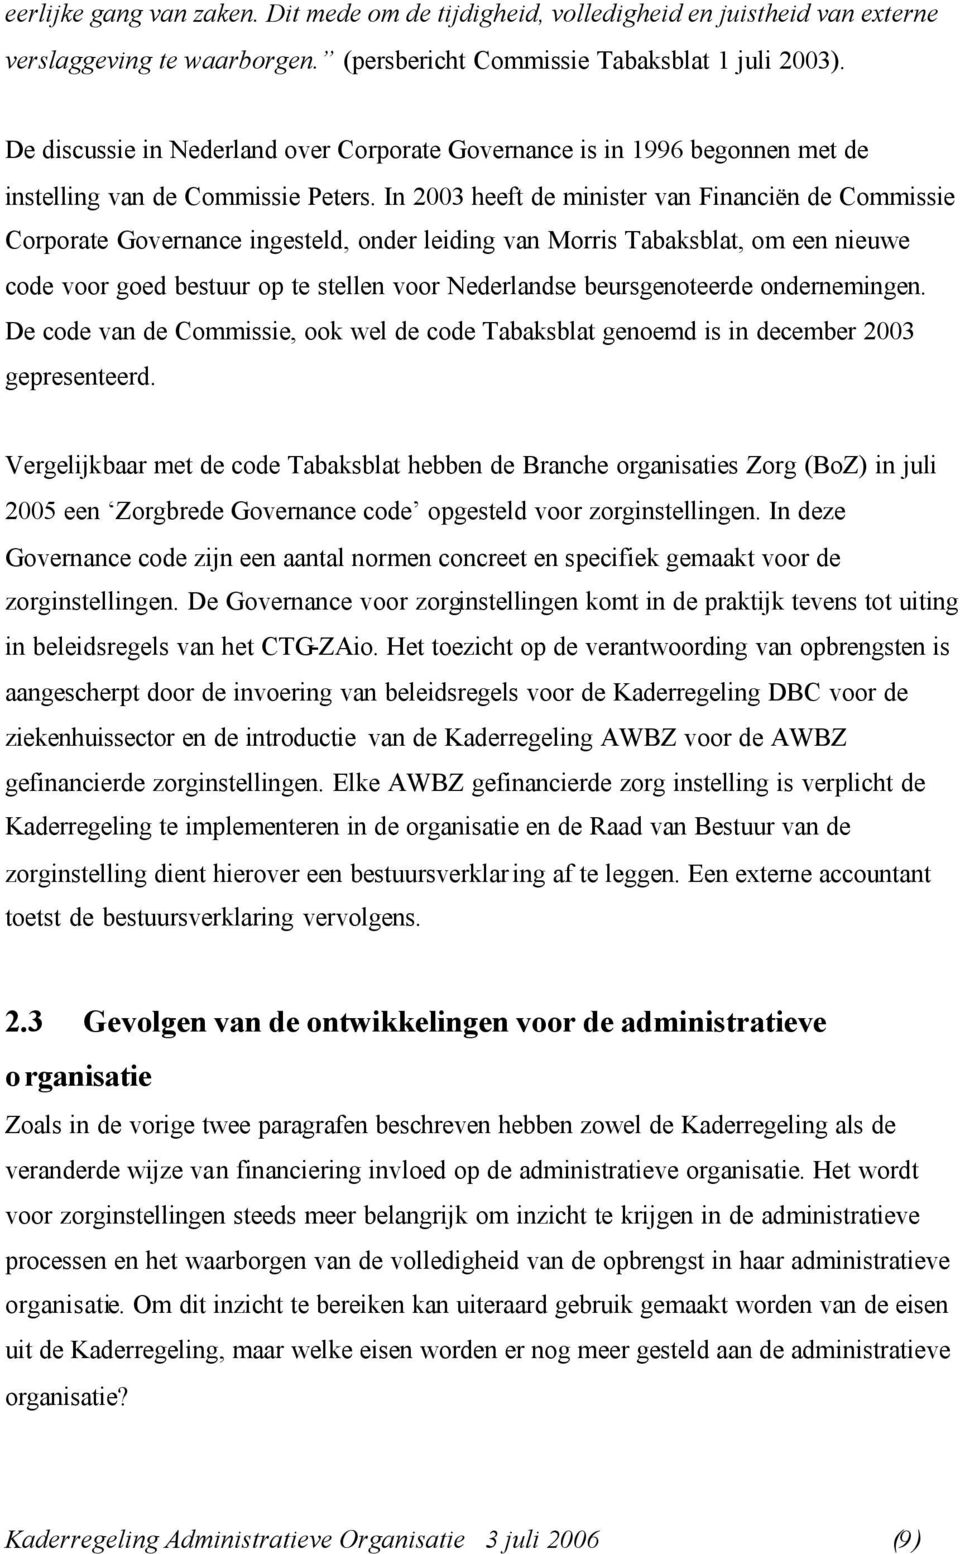 In 2003 heeft de minister van Financiën de Commissie Corporate Governance ingesteld, onder leiding van Morris Tabaksblat, om een nieuwe code voor goed bestuur op te stellen voor Nederlandse